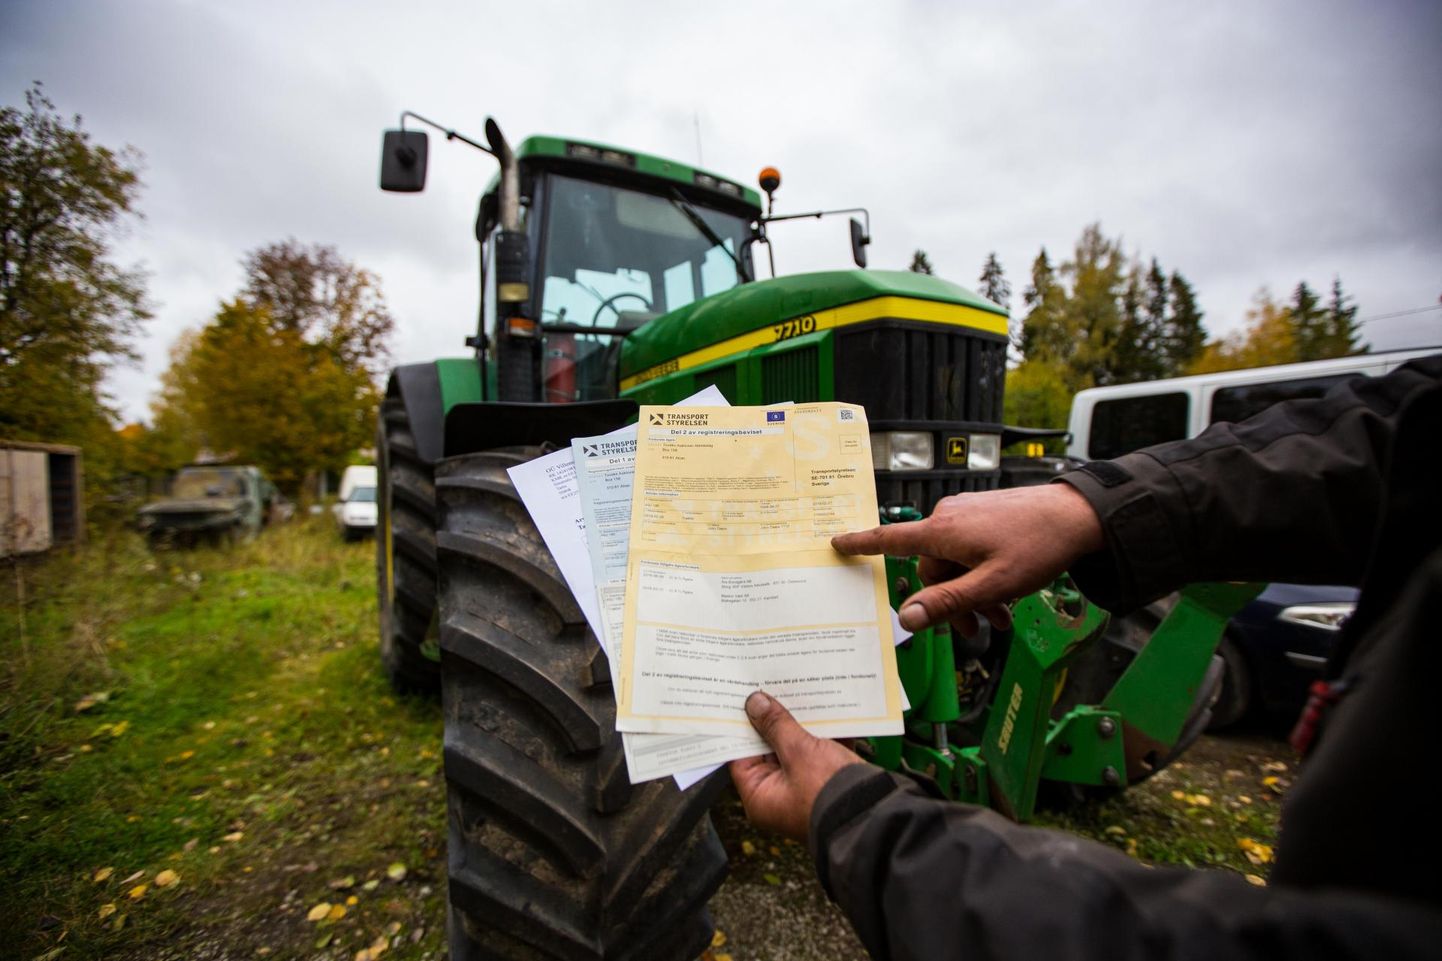 Paberite järgi igati korraliku minevikuga traktor, aga Eestis seda registreerida ei saa, sest maanteeameti hinnangul peab tehasetähise lööma raamile, mitte lipikule.